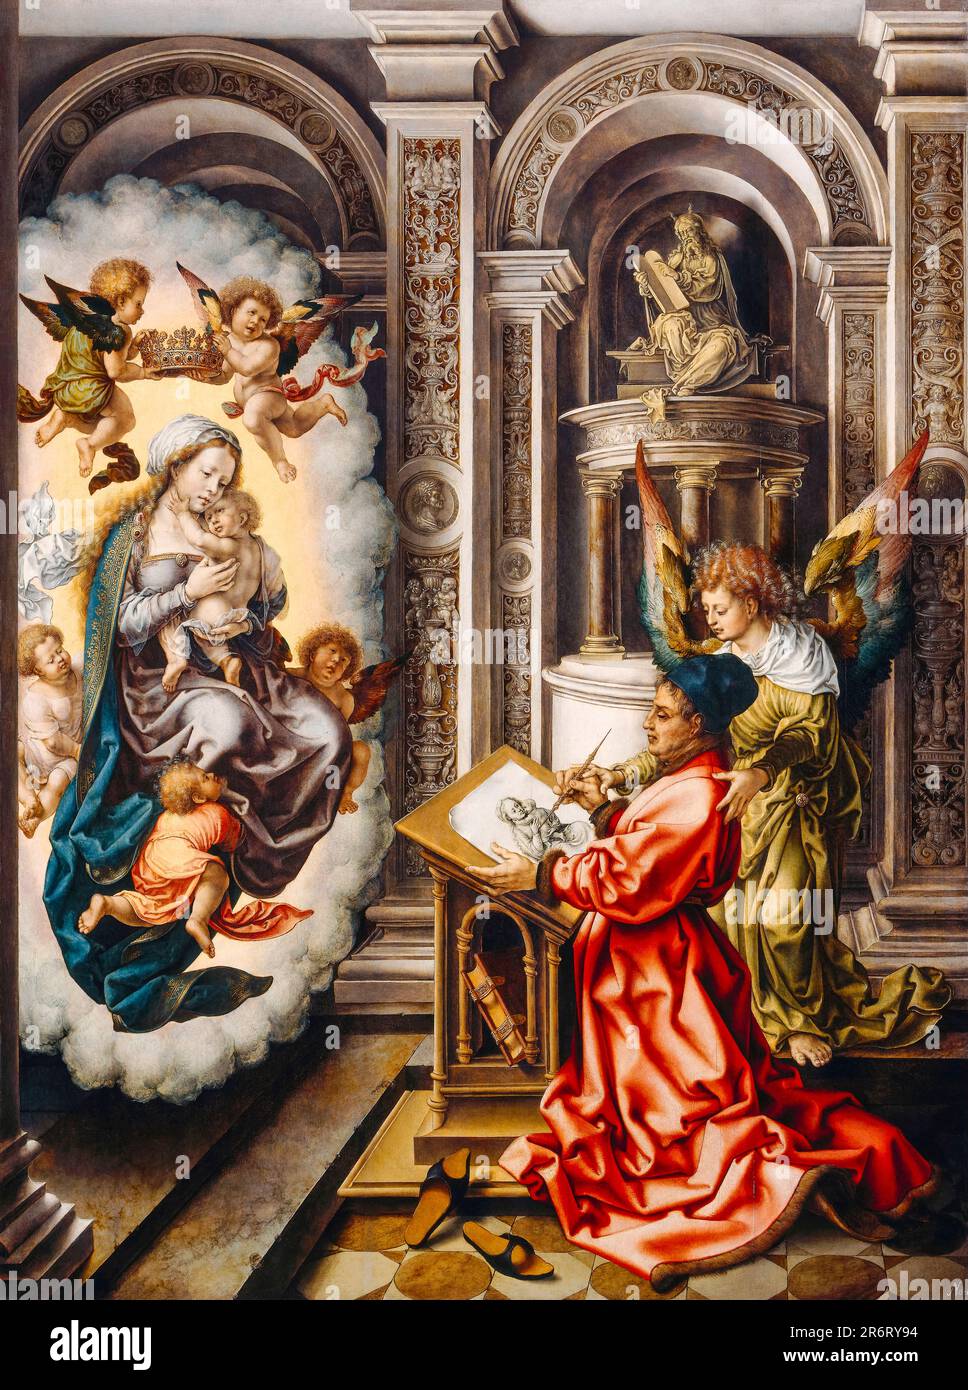 Jan Gossaert, St Luke peinture la Madonna, peinture à l'huile sur panneau, vers 1520 Banque D'Images